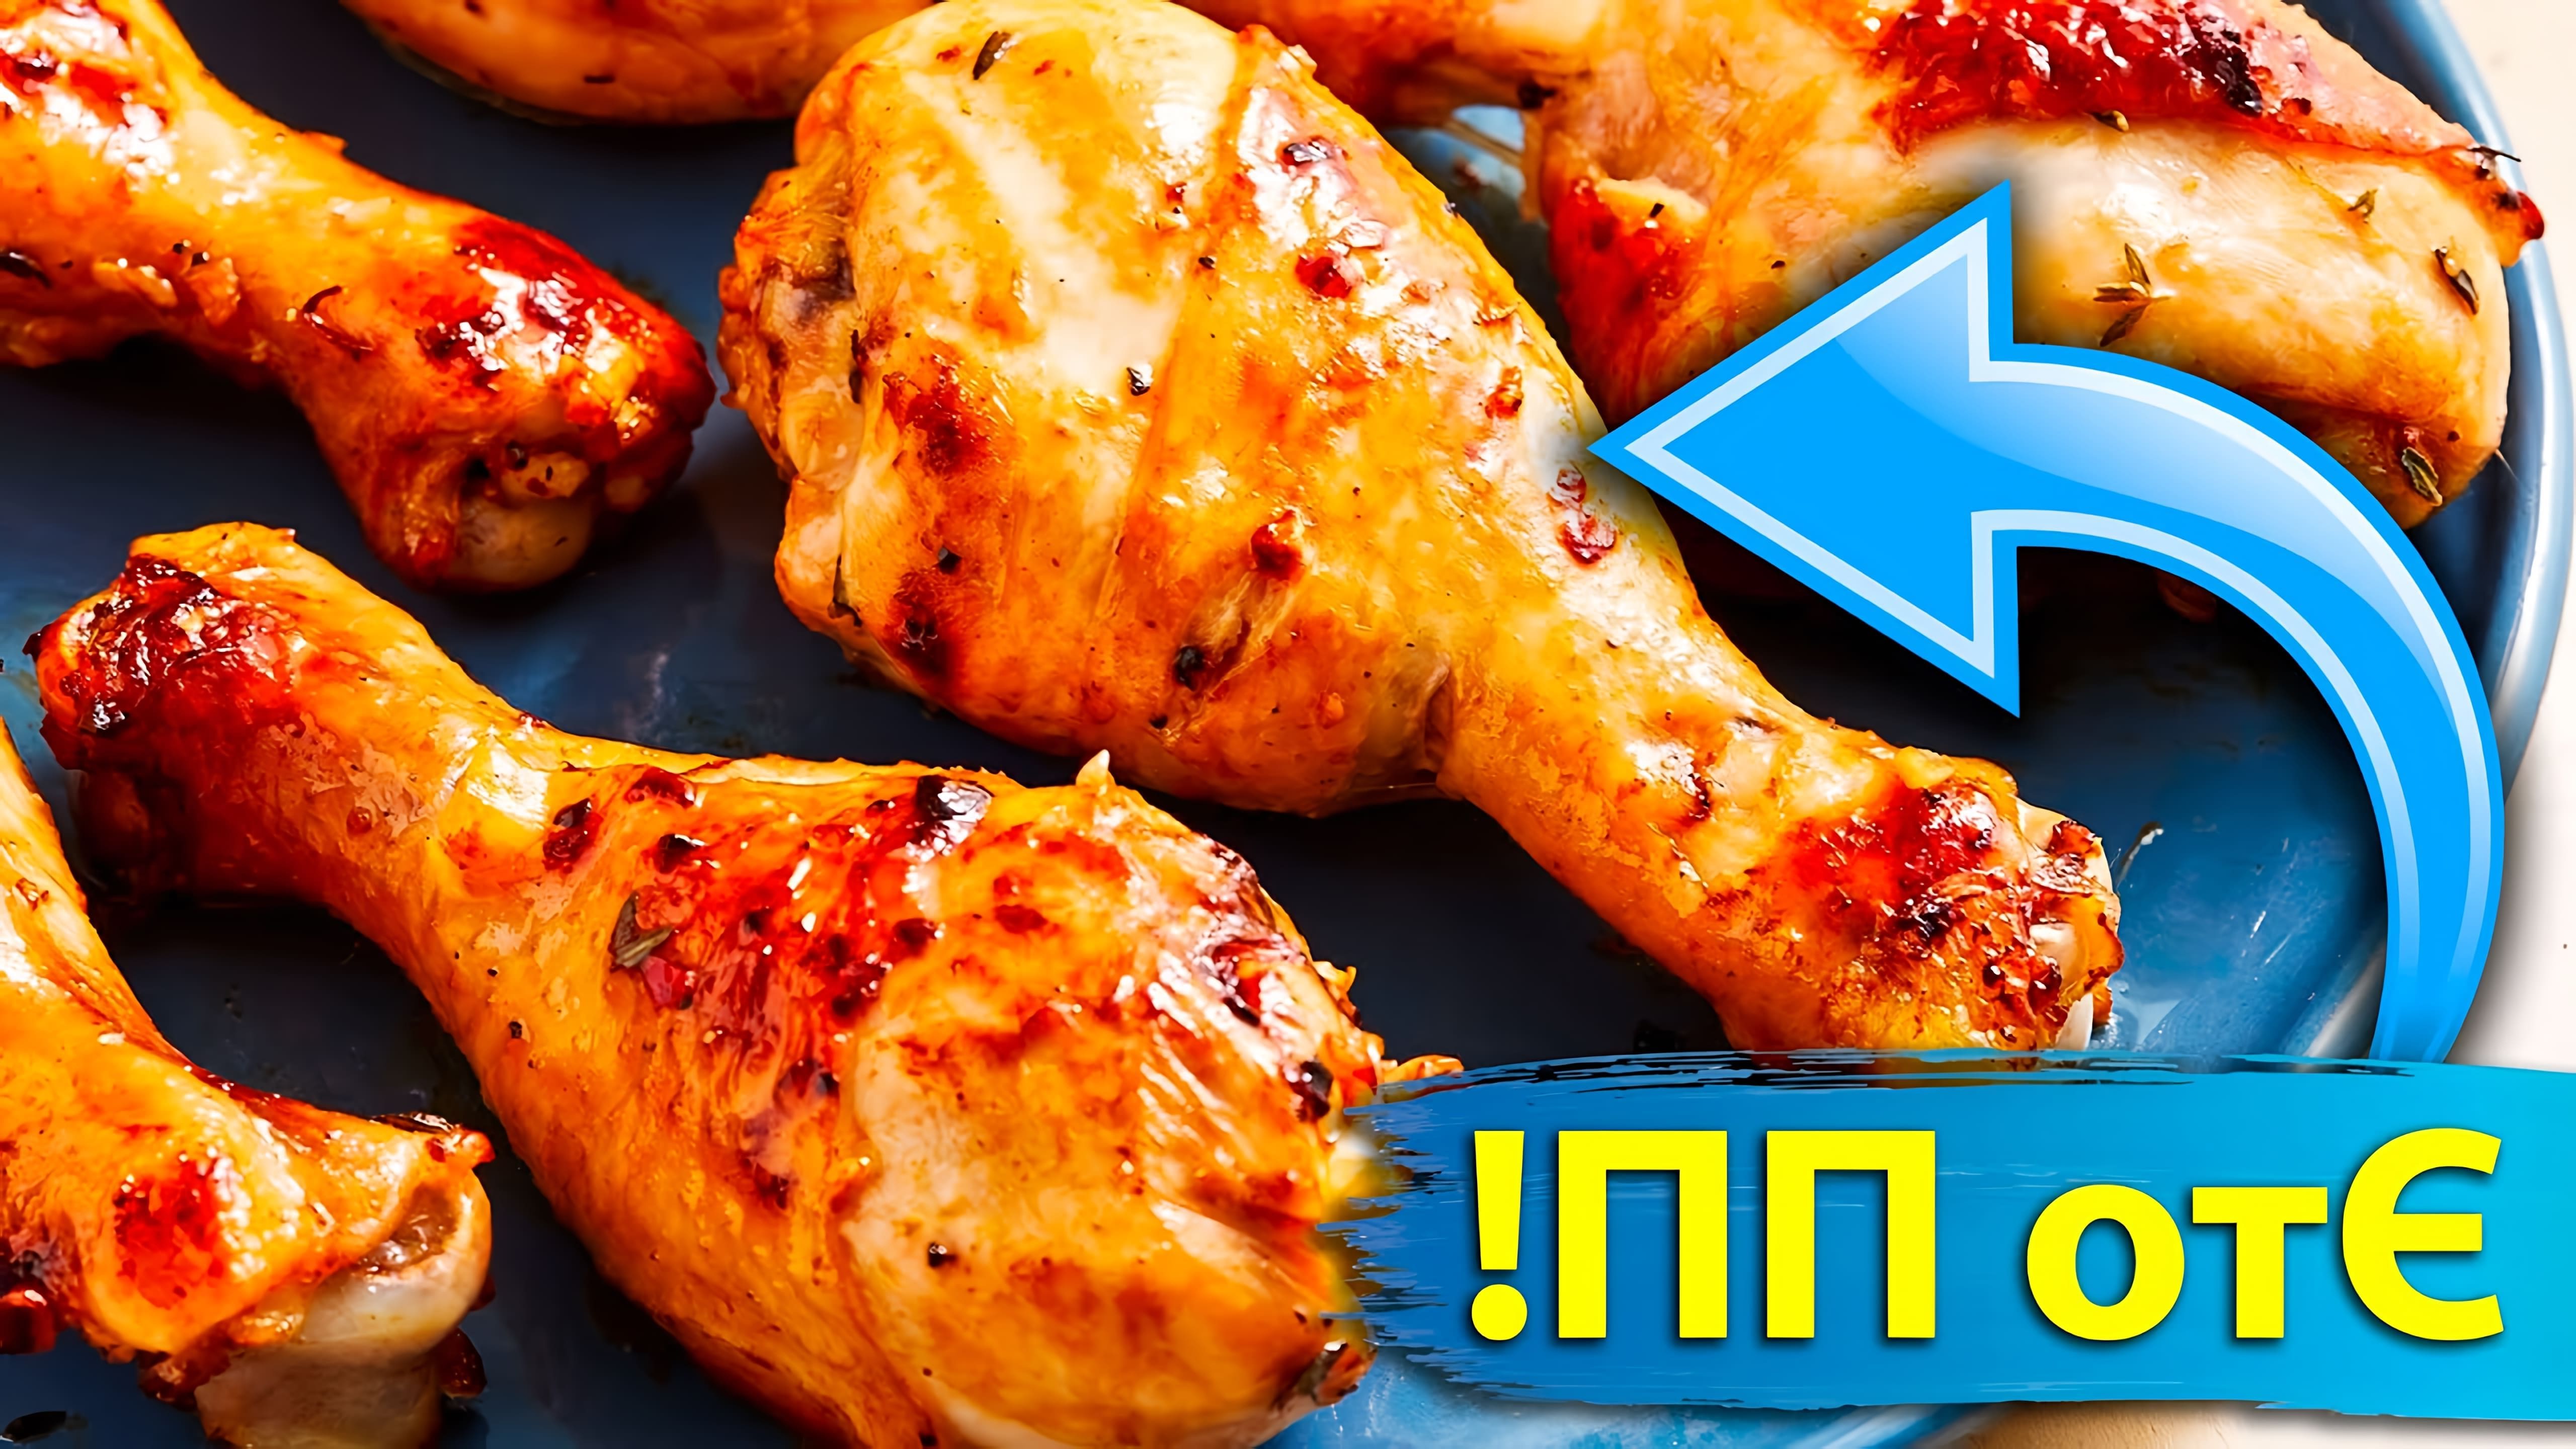 В этом видео демонстрируется рецепт приготовления запеченной курицы в духовке